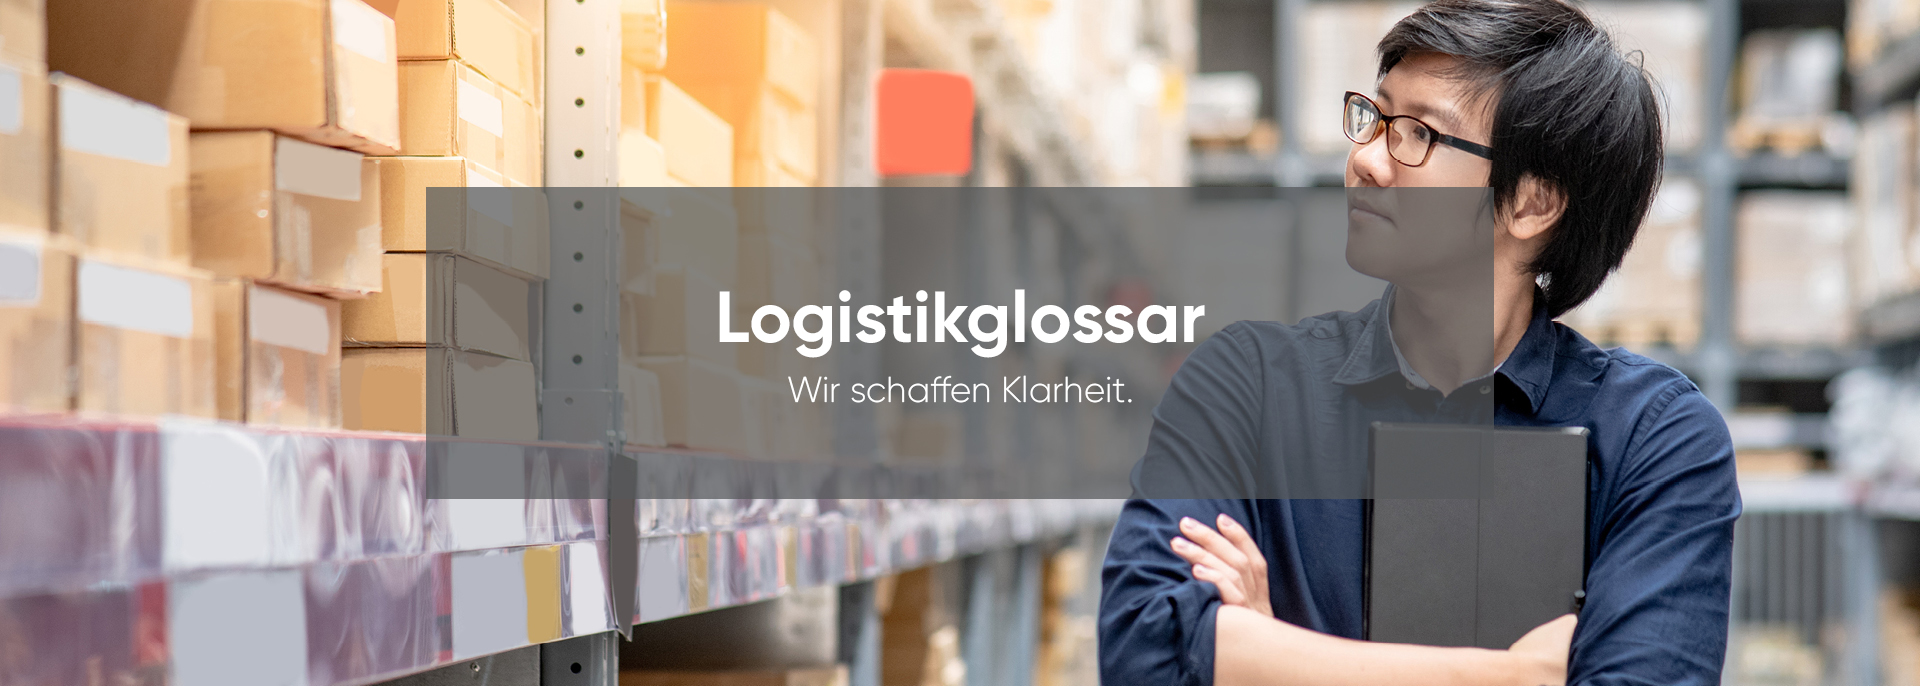 Logistikglossar - Hier finden Sie, was Sie suchen